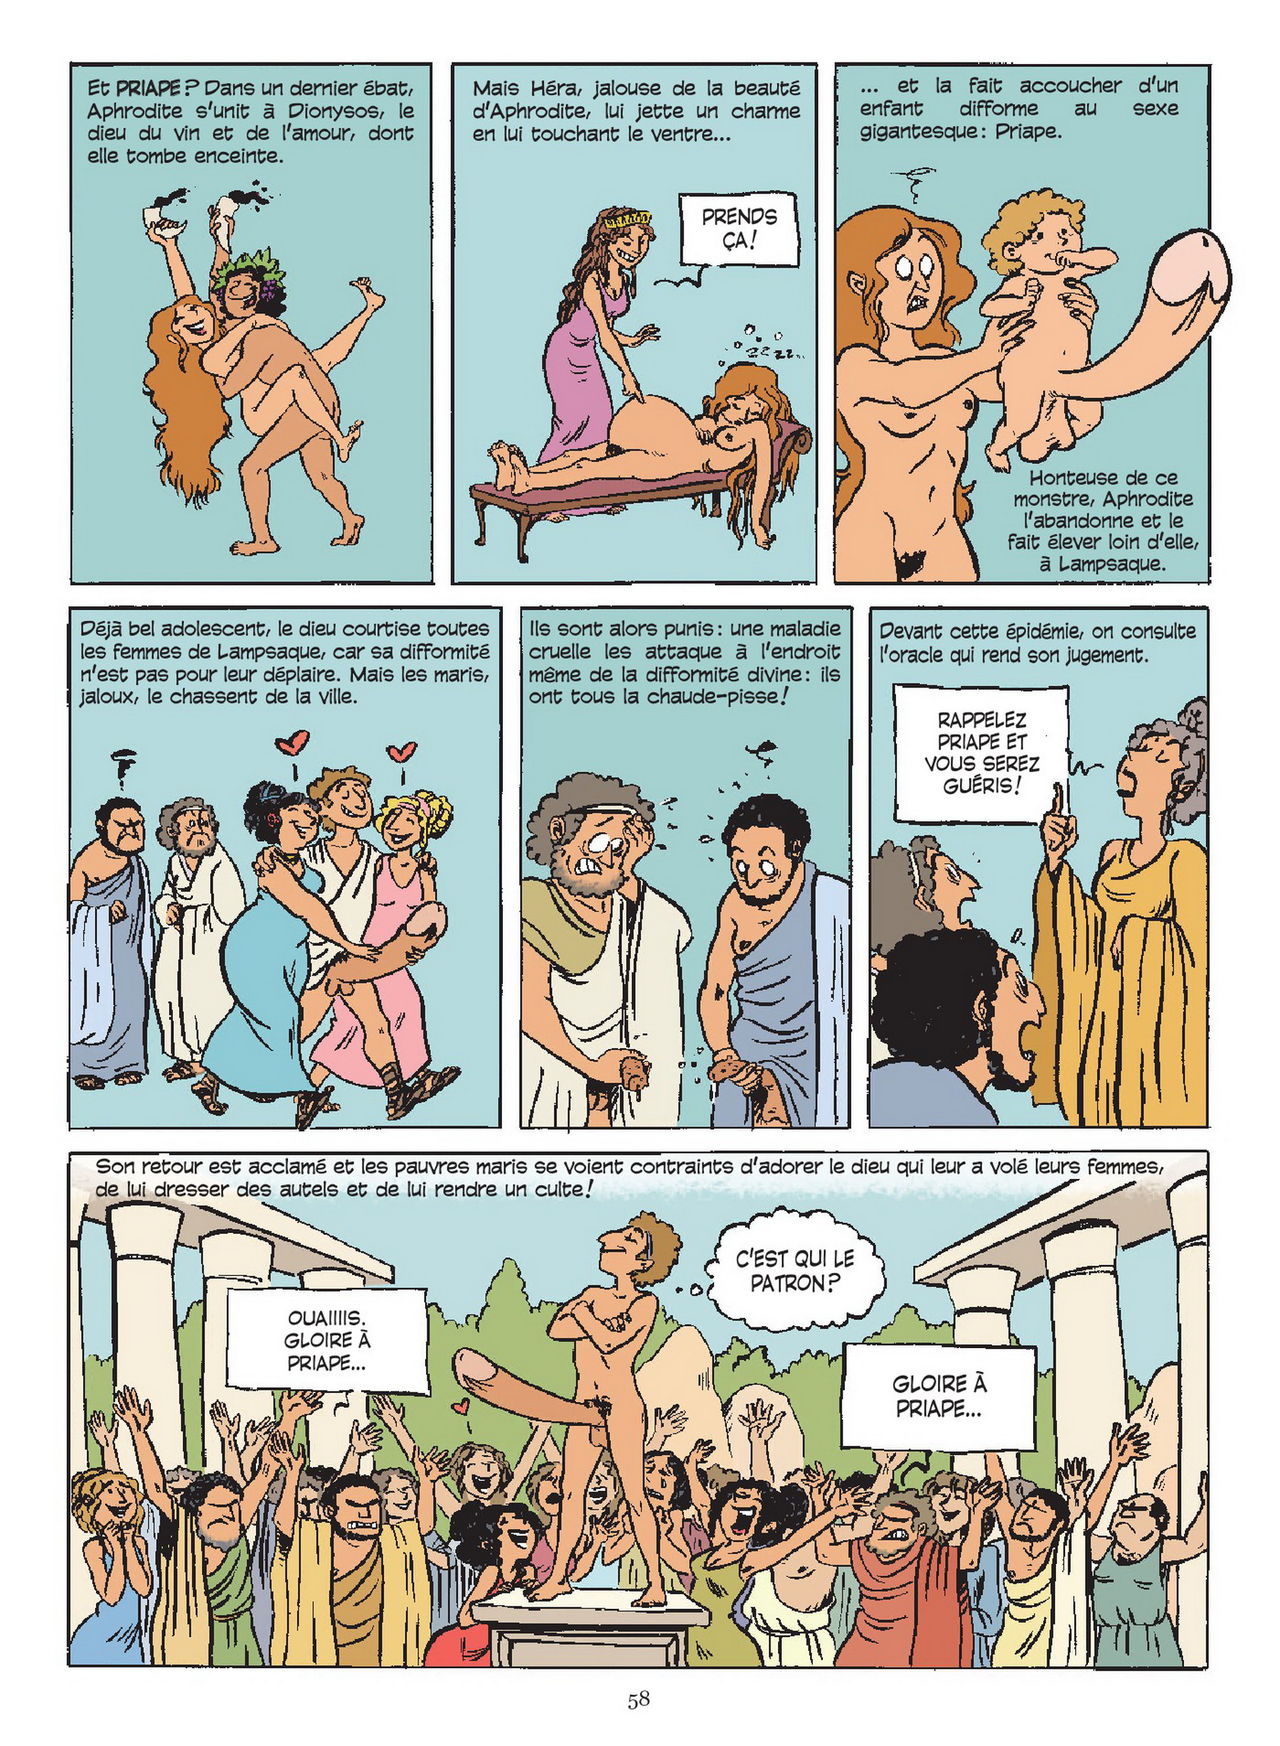 Sexe Story / Une Histoire du Sexe numero d'image 58